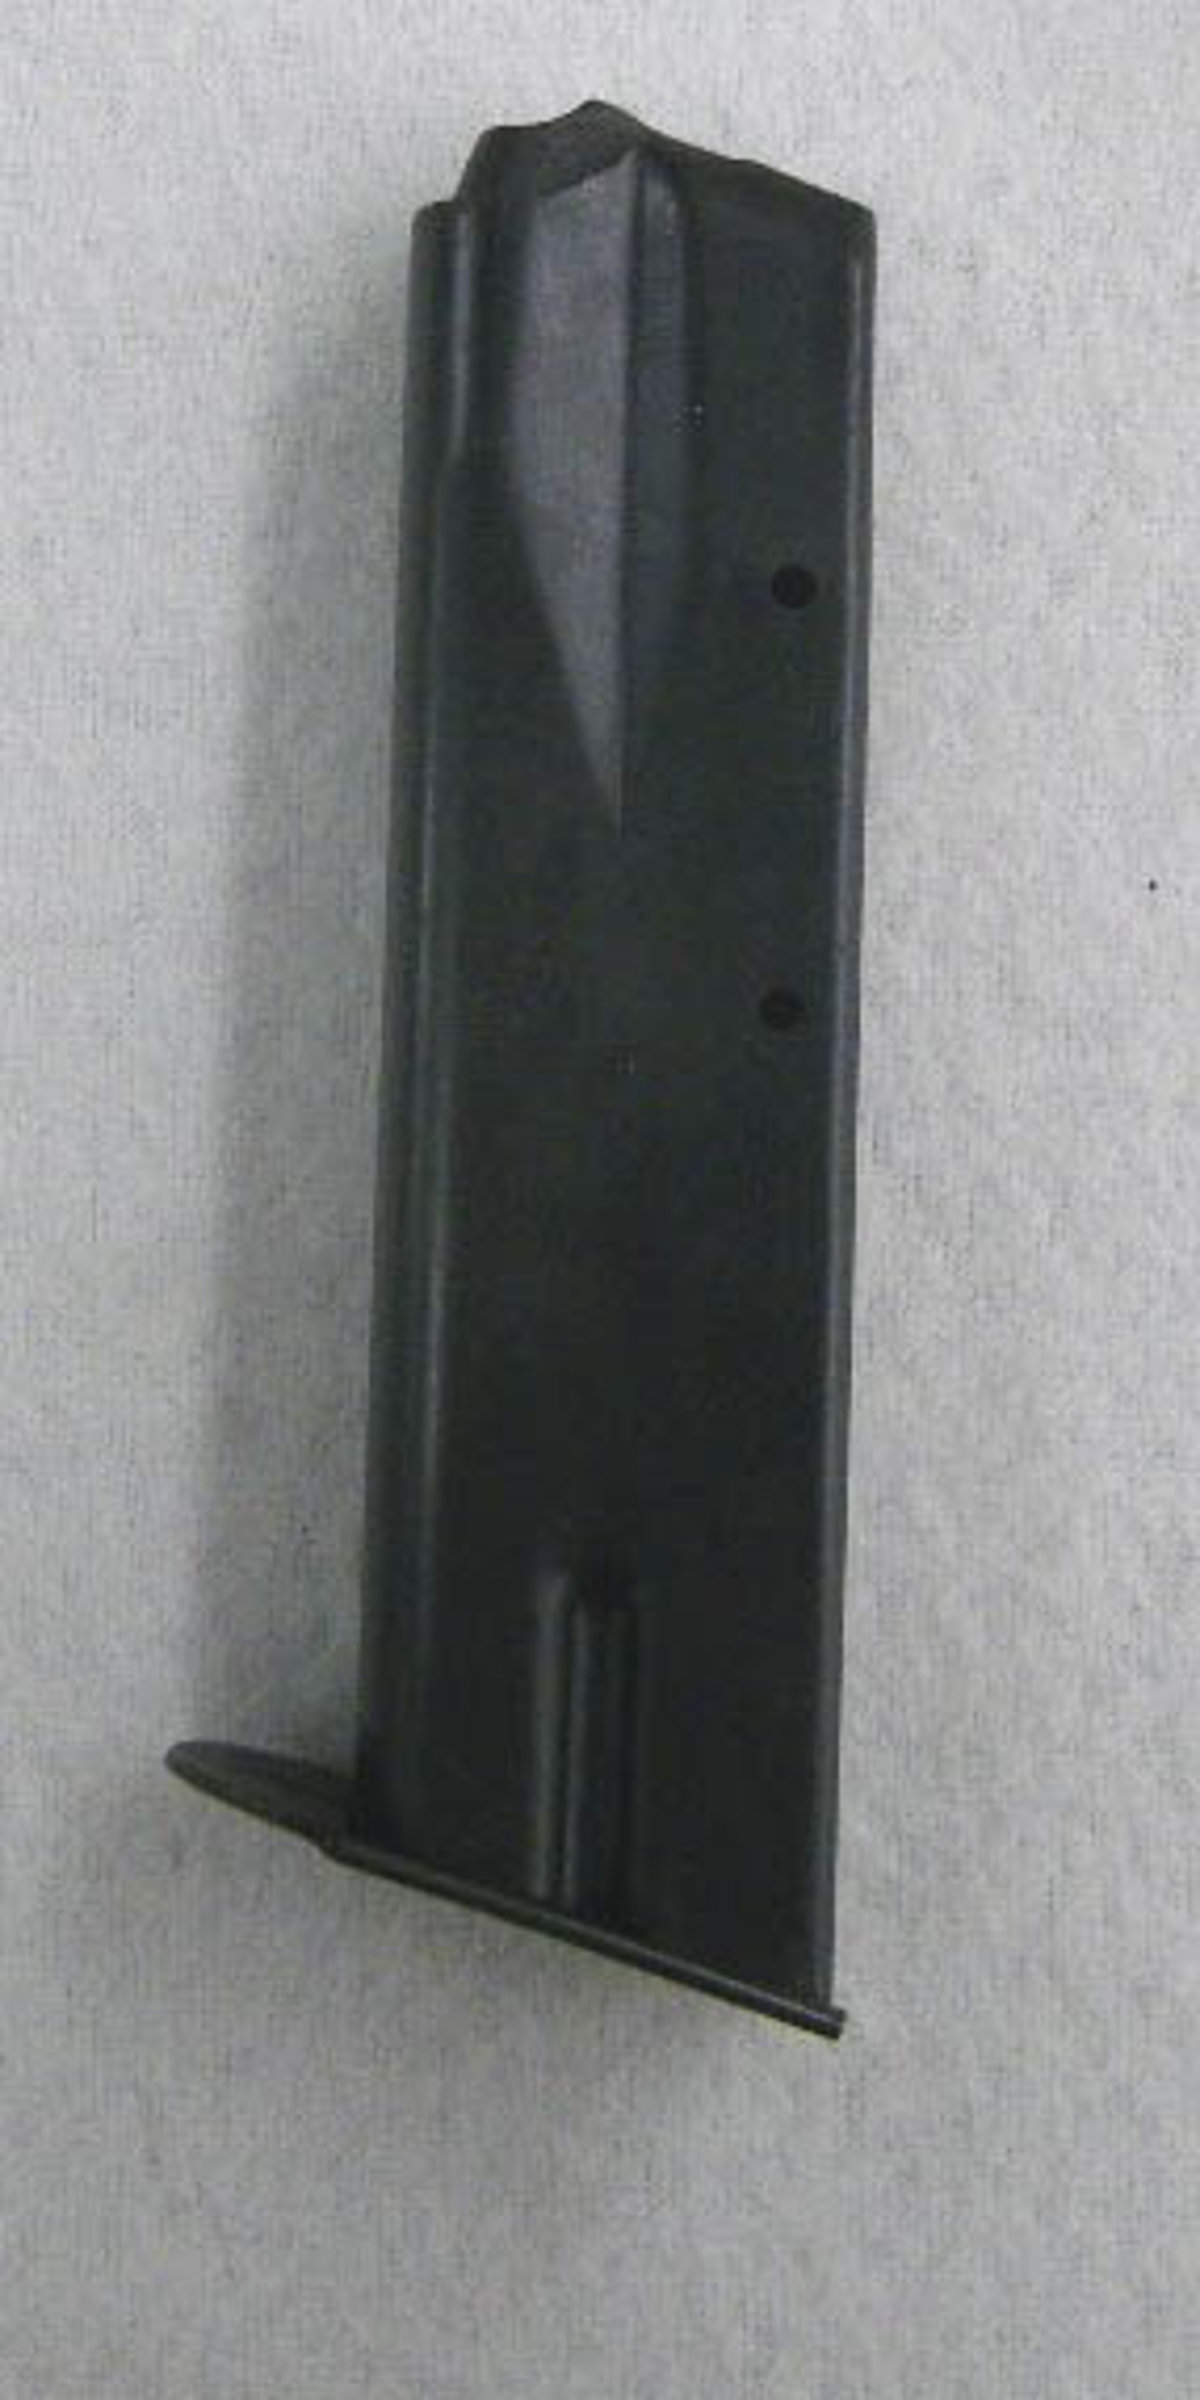 Magazin CZ 75 9mm Luger